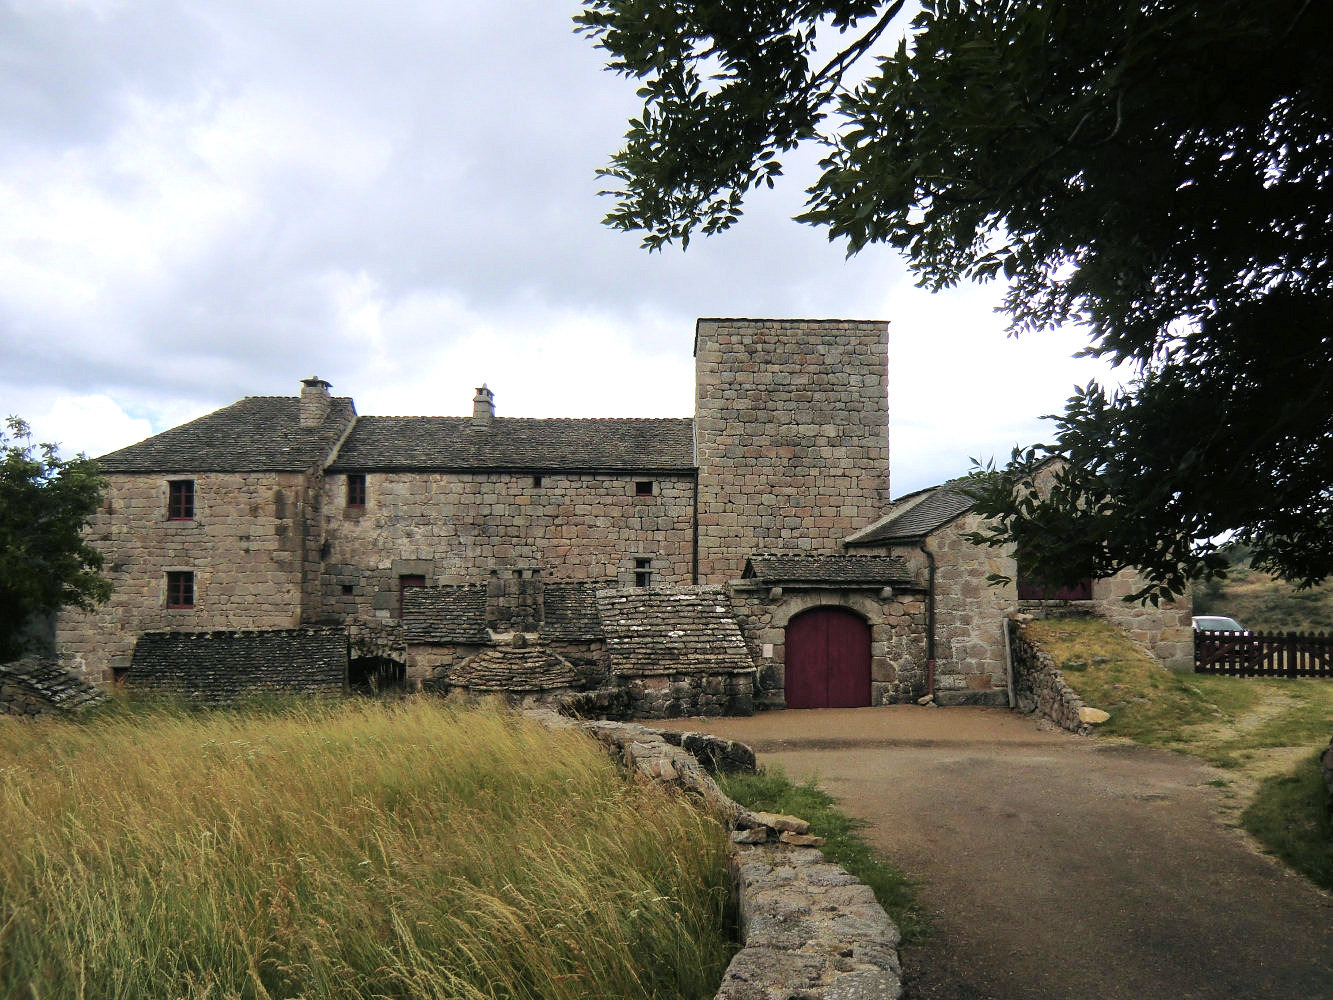 Die Burg in Grizac, von Guillaumes Vater erbaut, war Familiensitz bis 1701, wurde dann Bauernhof, zerfiel schließlich und wurde ab 1980 vom 19. Nachfahren von Guillaumes Onkel zurückgekauft, renoviert und ist heute wieder landwirtschaftlich genutzt